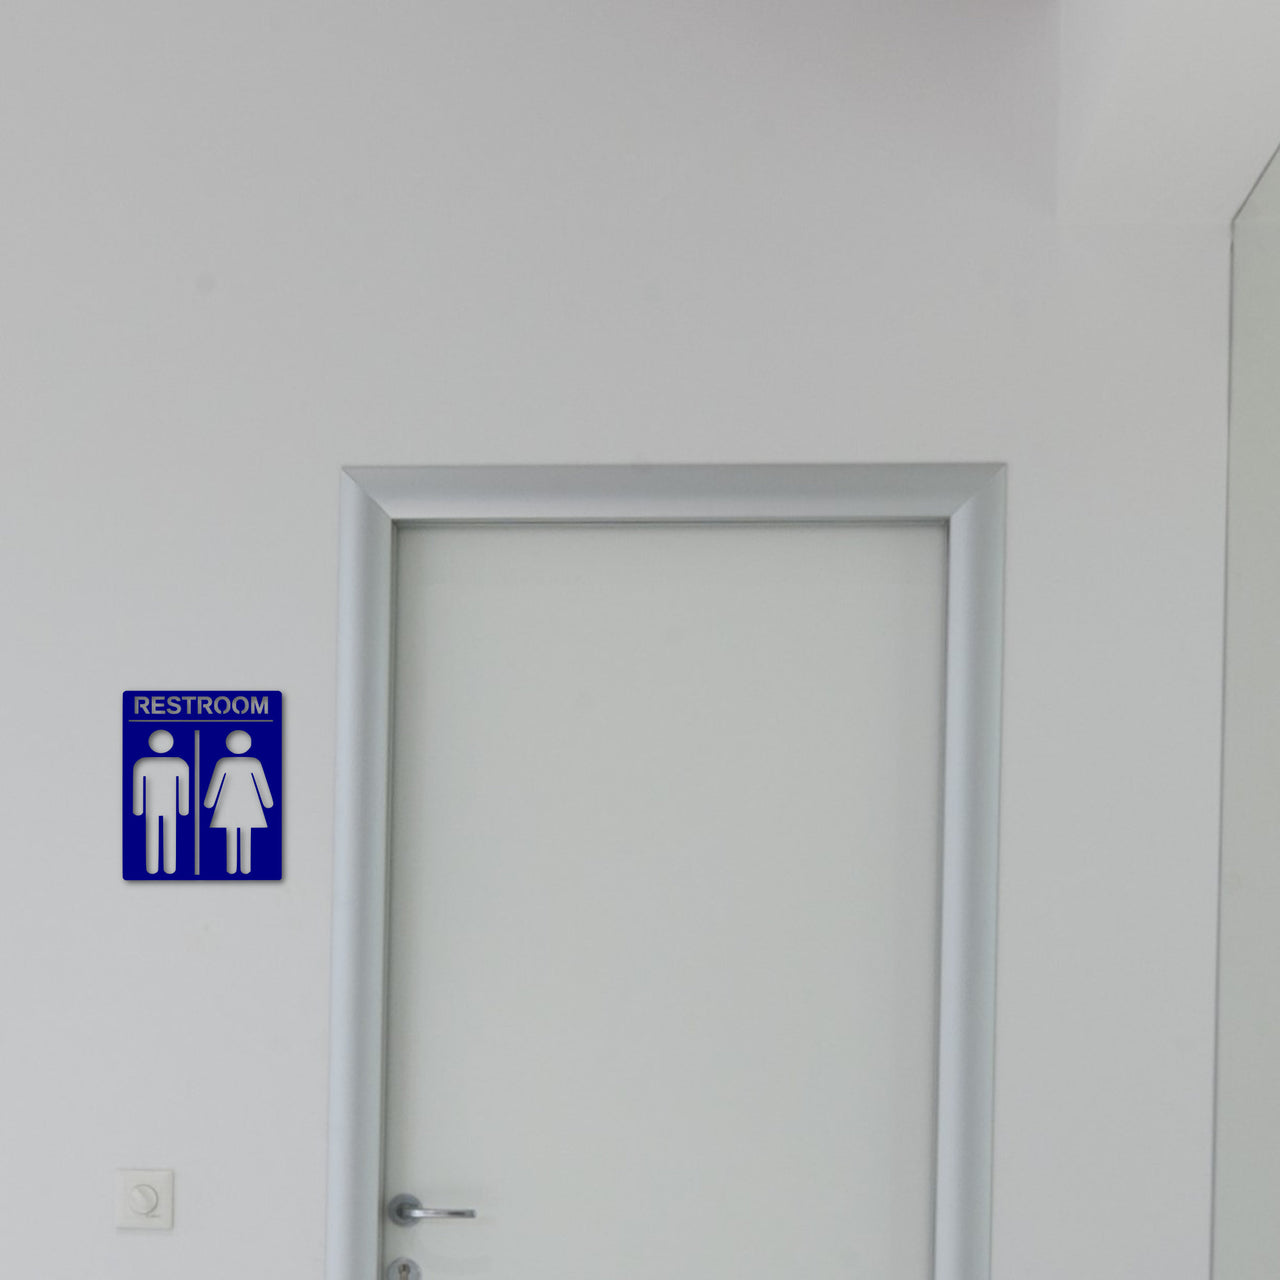 Metal Restroom Sign | Restroom Door Sign | Restroom Decor | Bathroom Accessories | Restroom Art | Restroom People | Unisex Bathroom Art